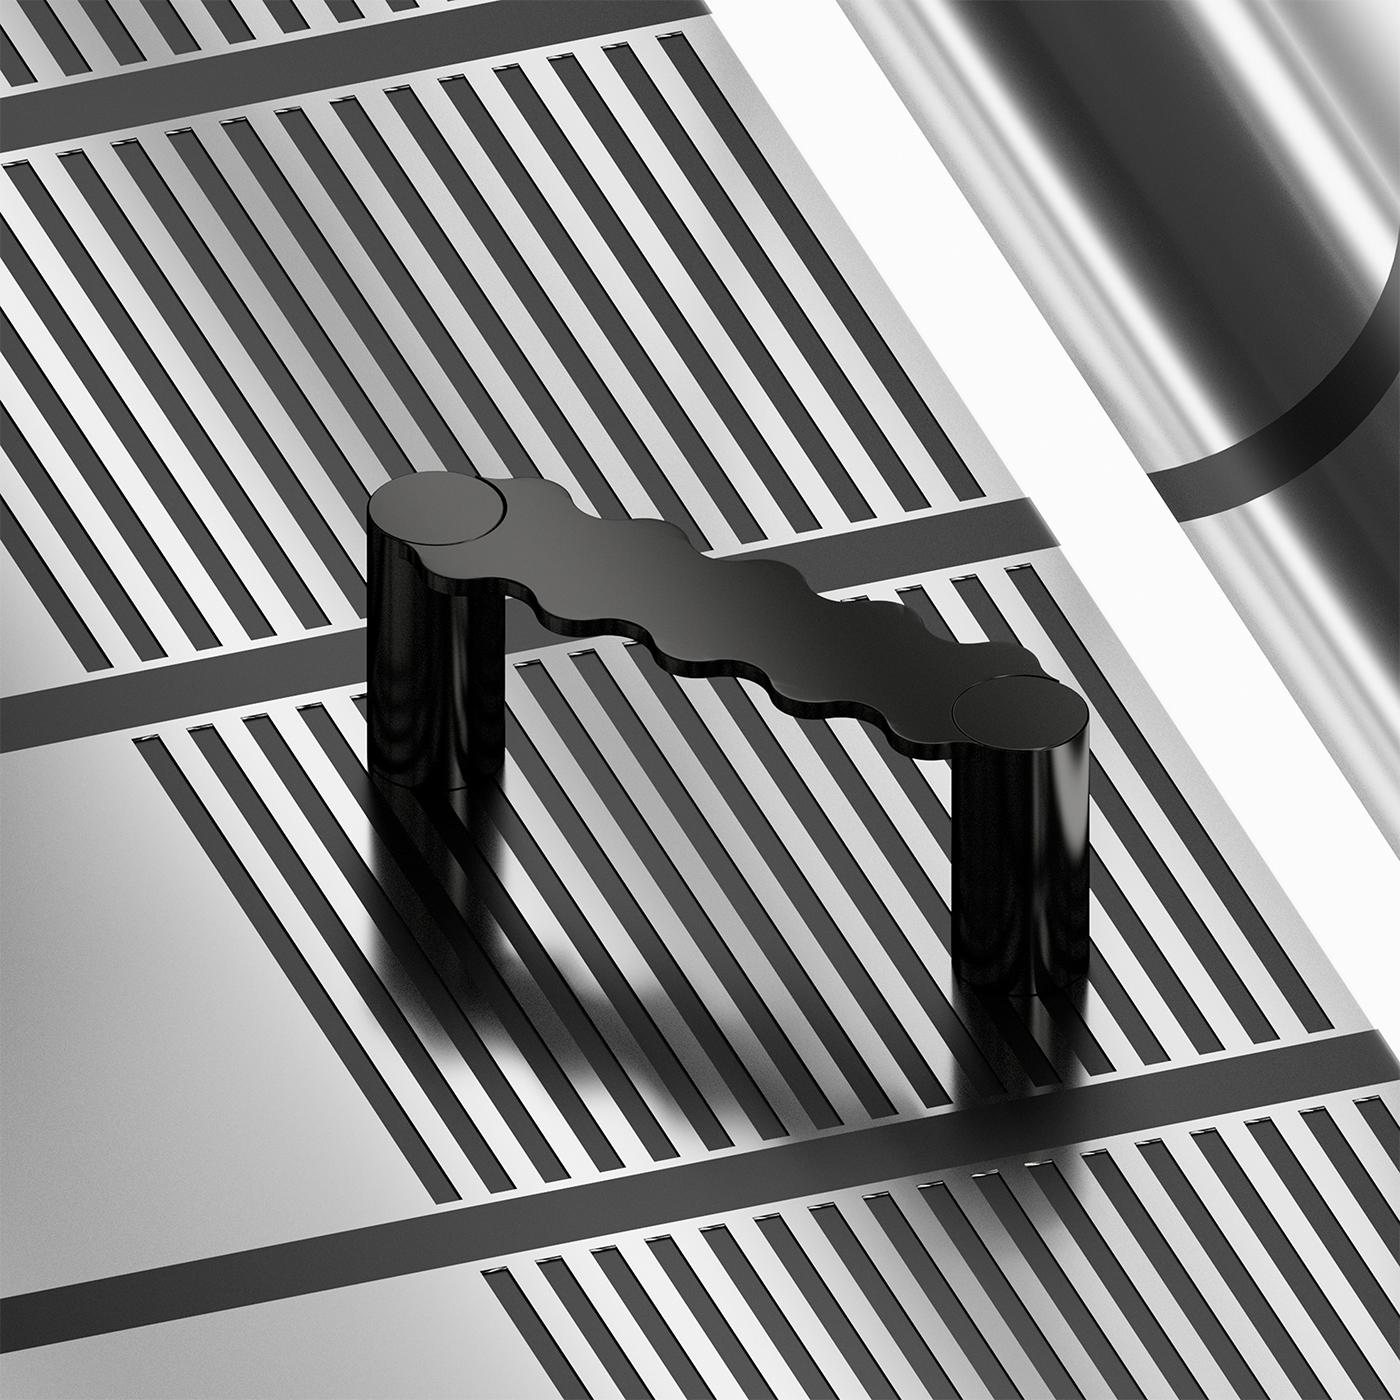 Die schwarze Hella-Bank ist eine skulpturale Metallbank, die vollständig handgefertigt und mit einer speziellen Aluminiumbehandlung versehen wurde. Das originelle Design, das sich durch eine geometrische und wellenförmige Form auszeichnet, macht